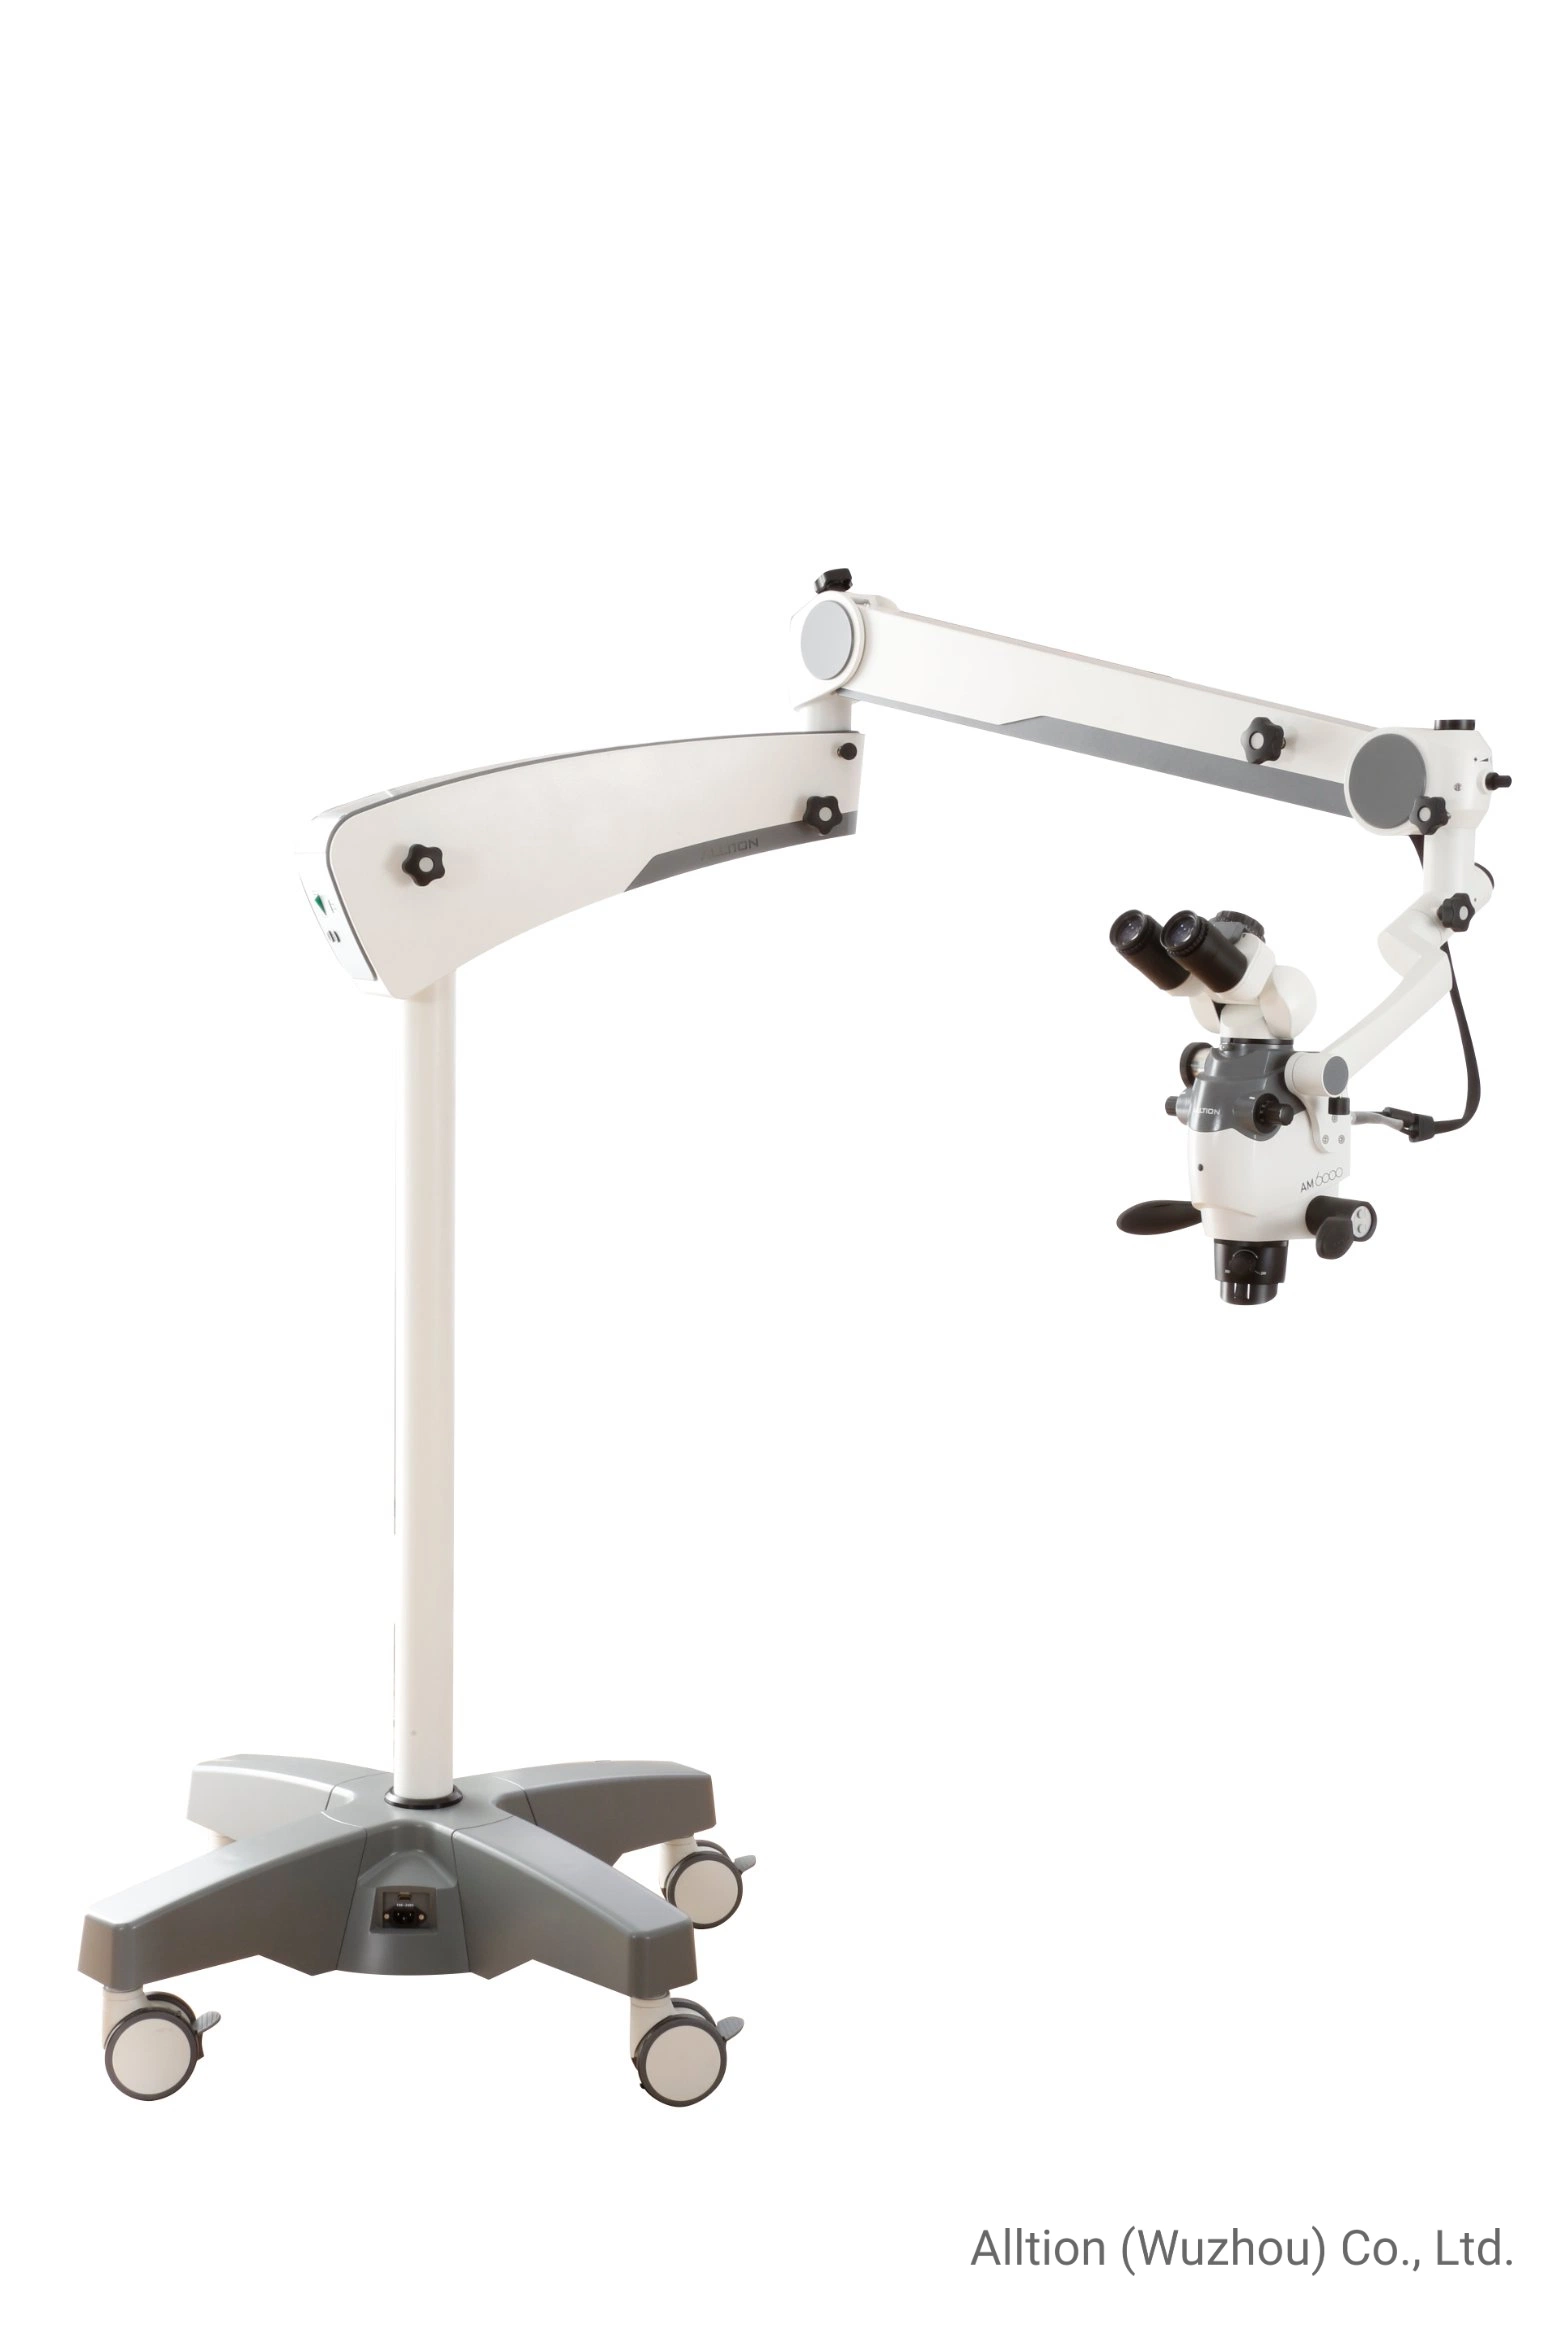 Am-6000 Zoom Microscope pour la chirurgie chirurgicale opératoire en dentisterie orthopédique, chirurgie de la main, neurochirurgie, andrologie et urologie P & R vétérinaire.